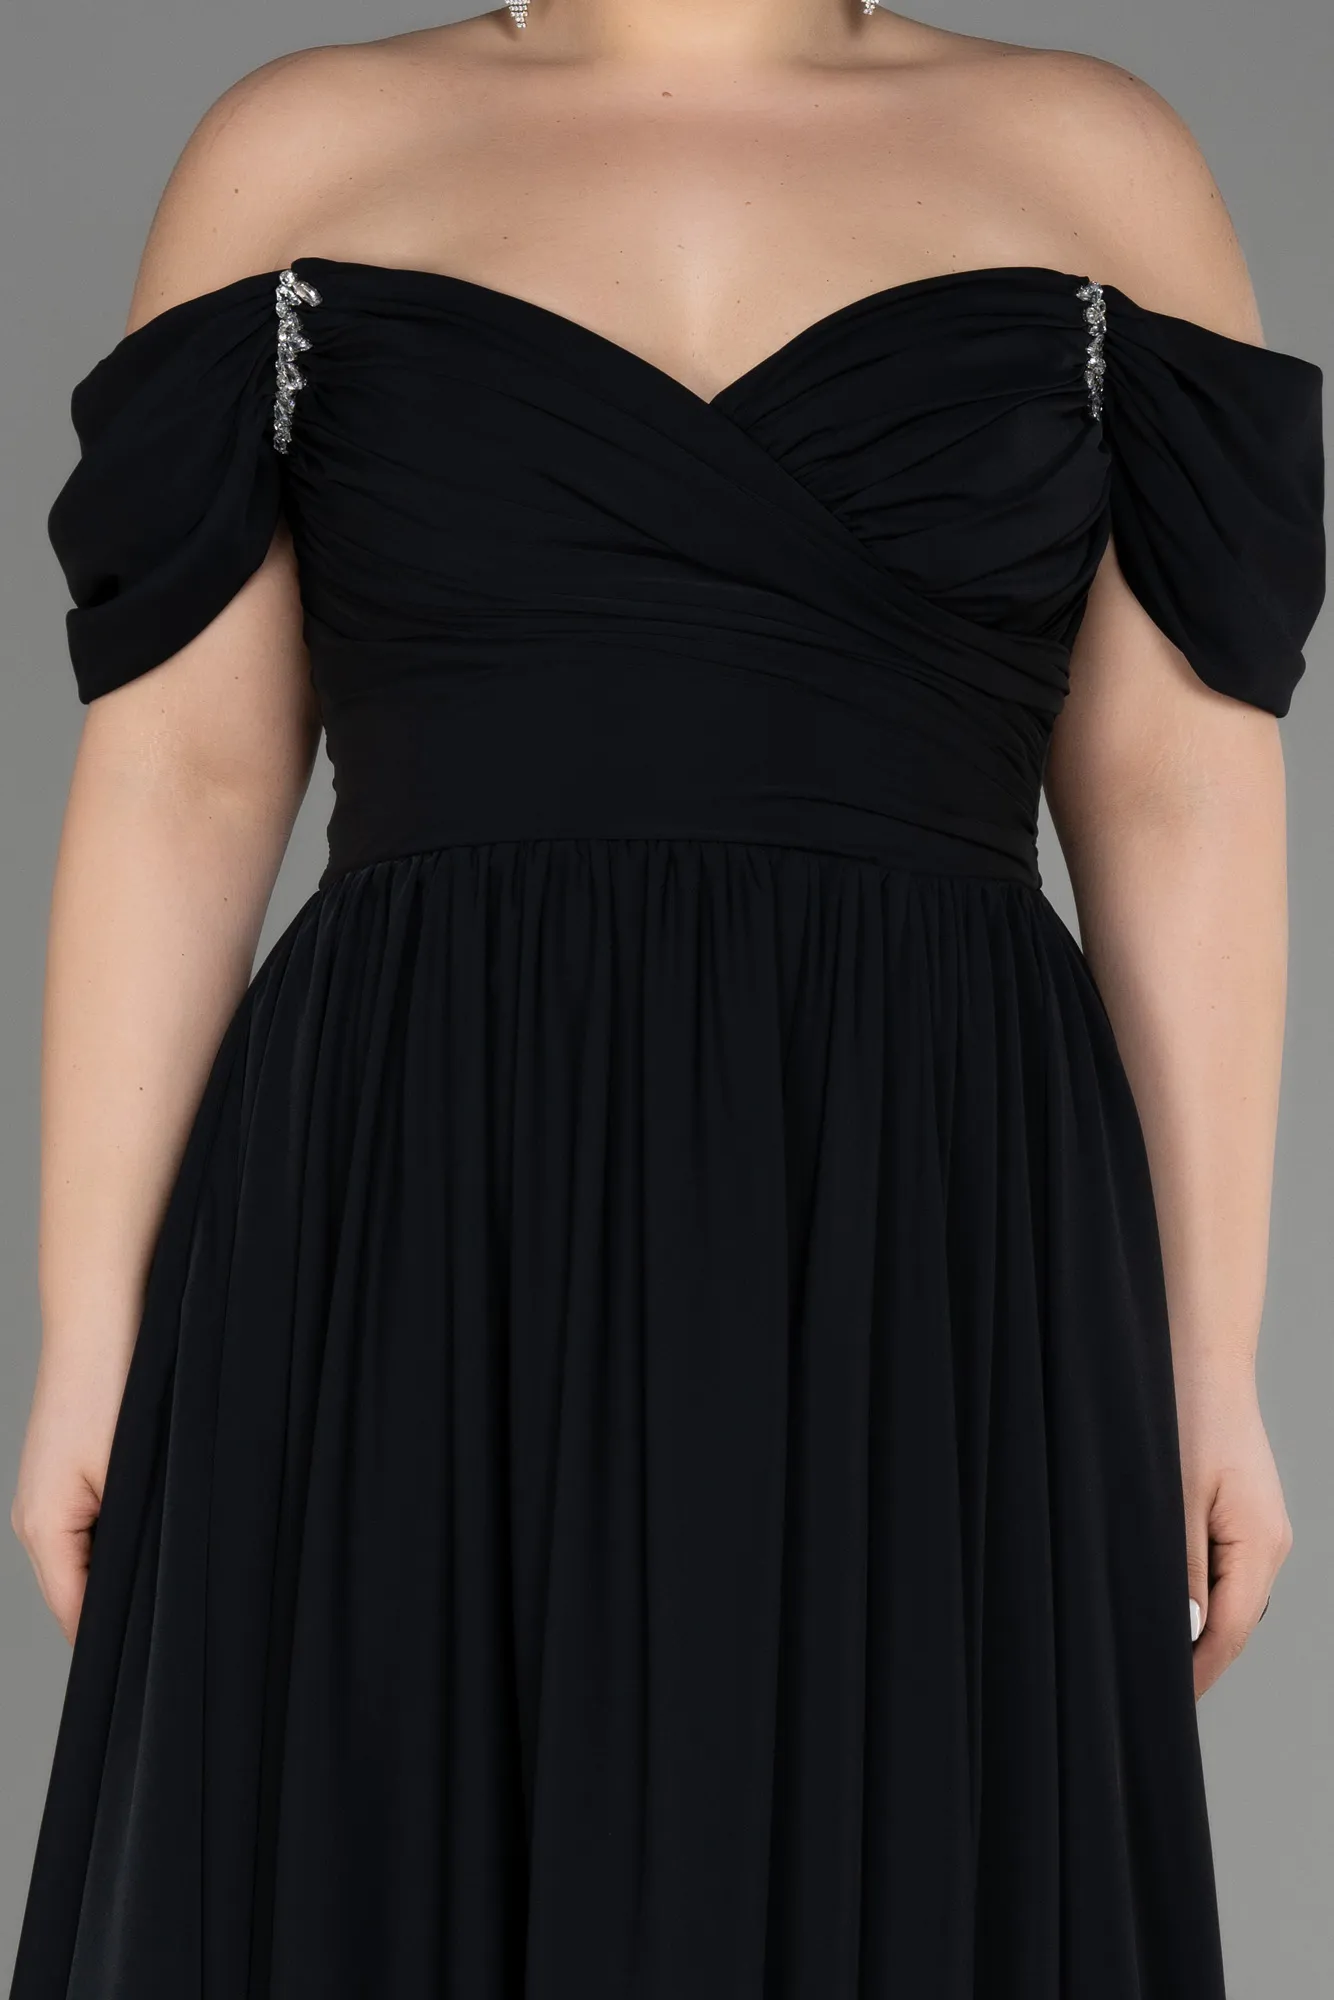 Black-Long Chiffon Plus Size Evening Dress ABU3738